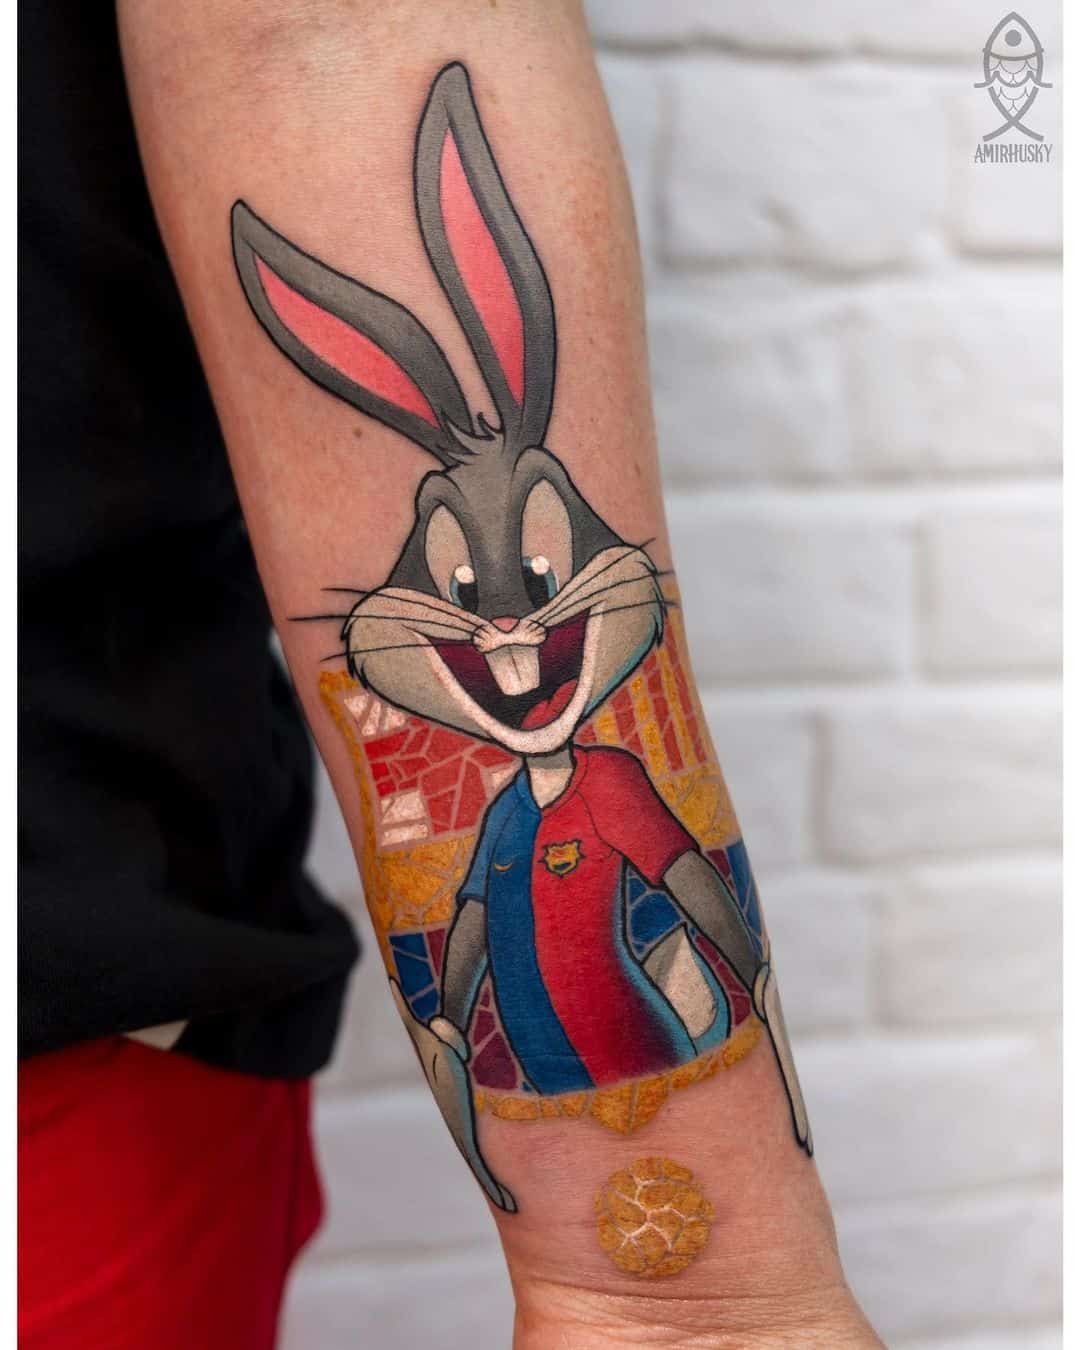 Bunny bugs tattoo by amirhusky